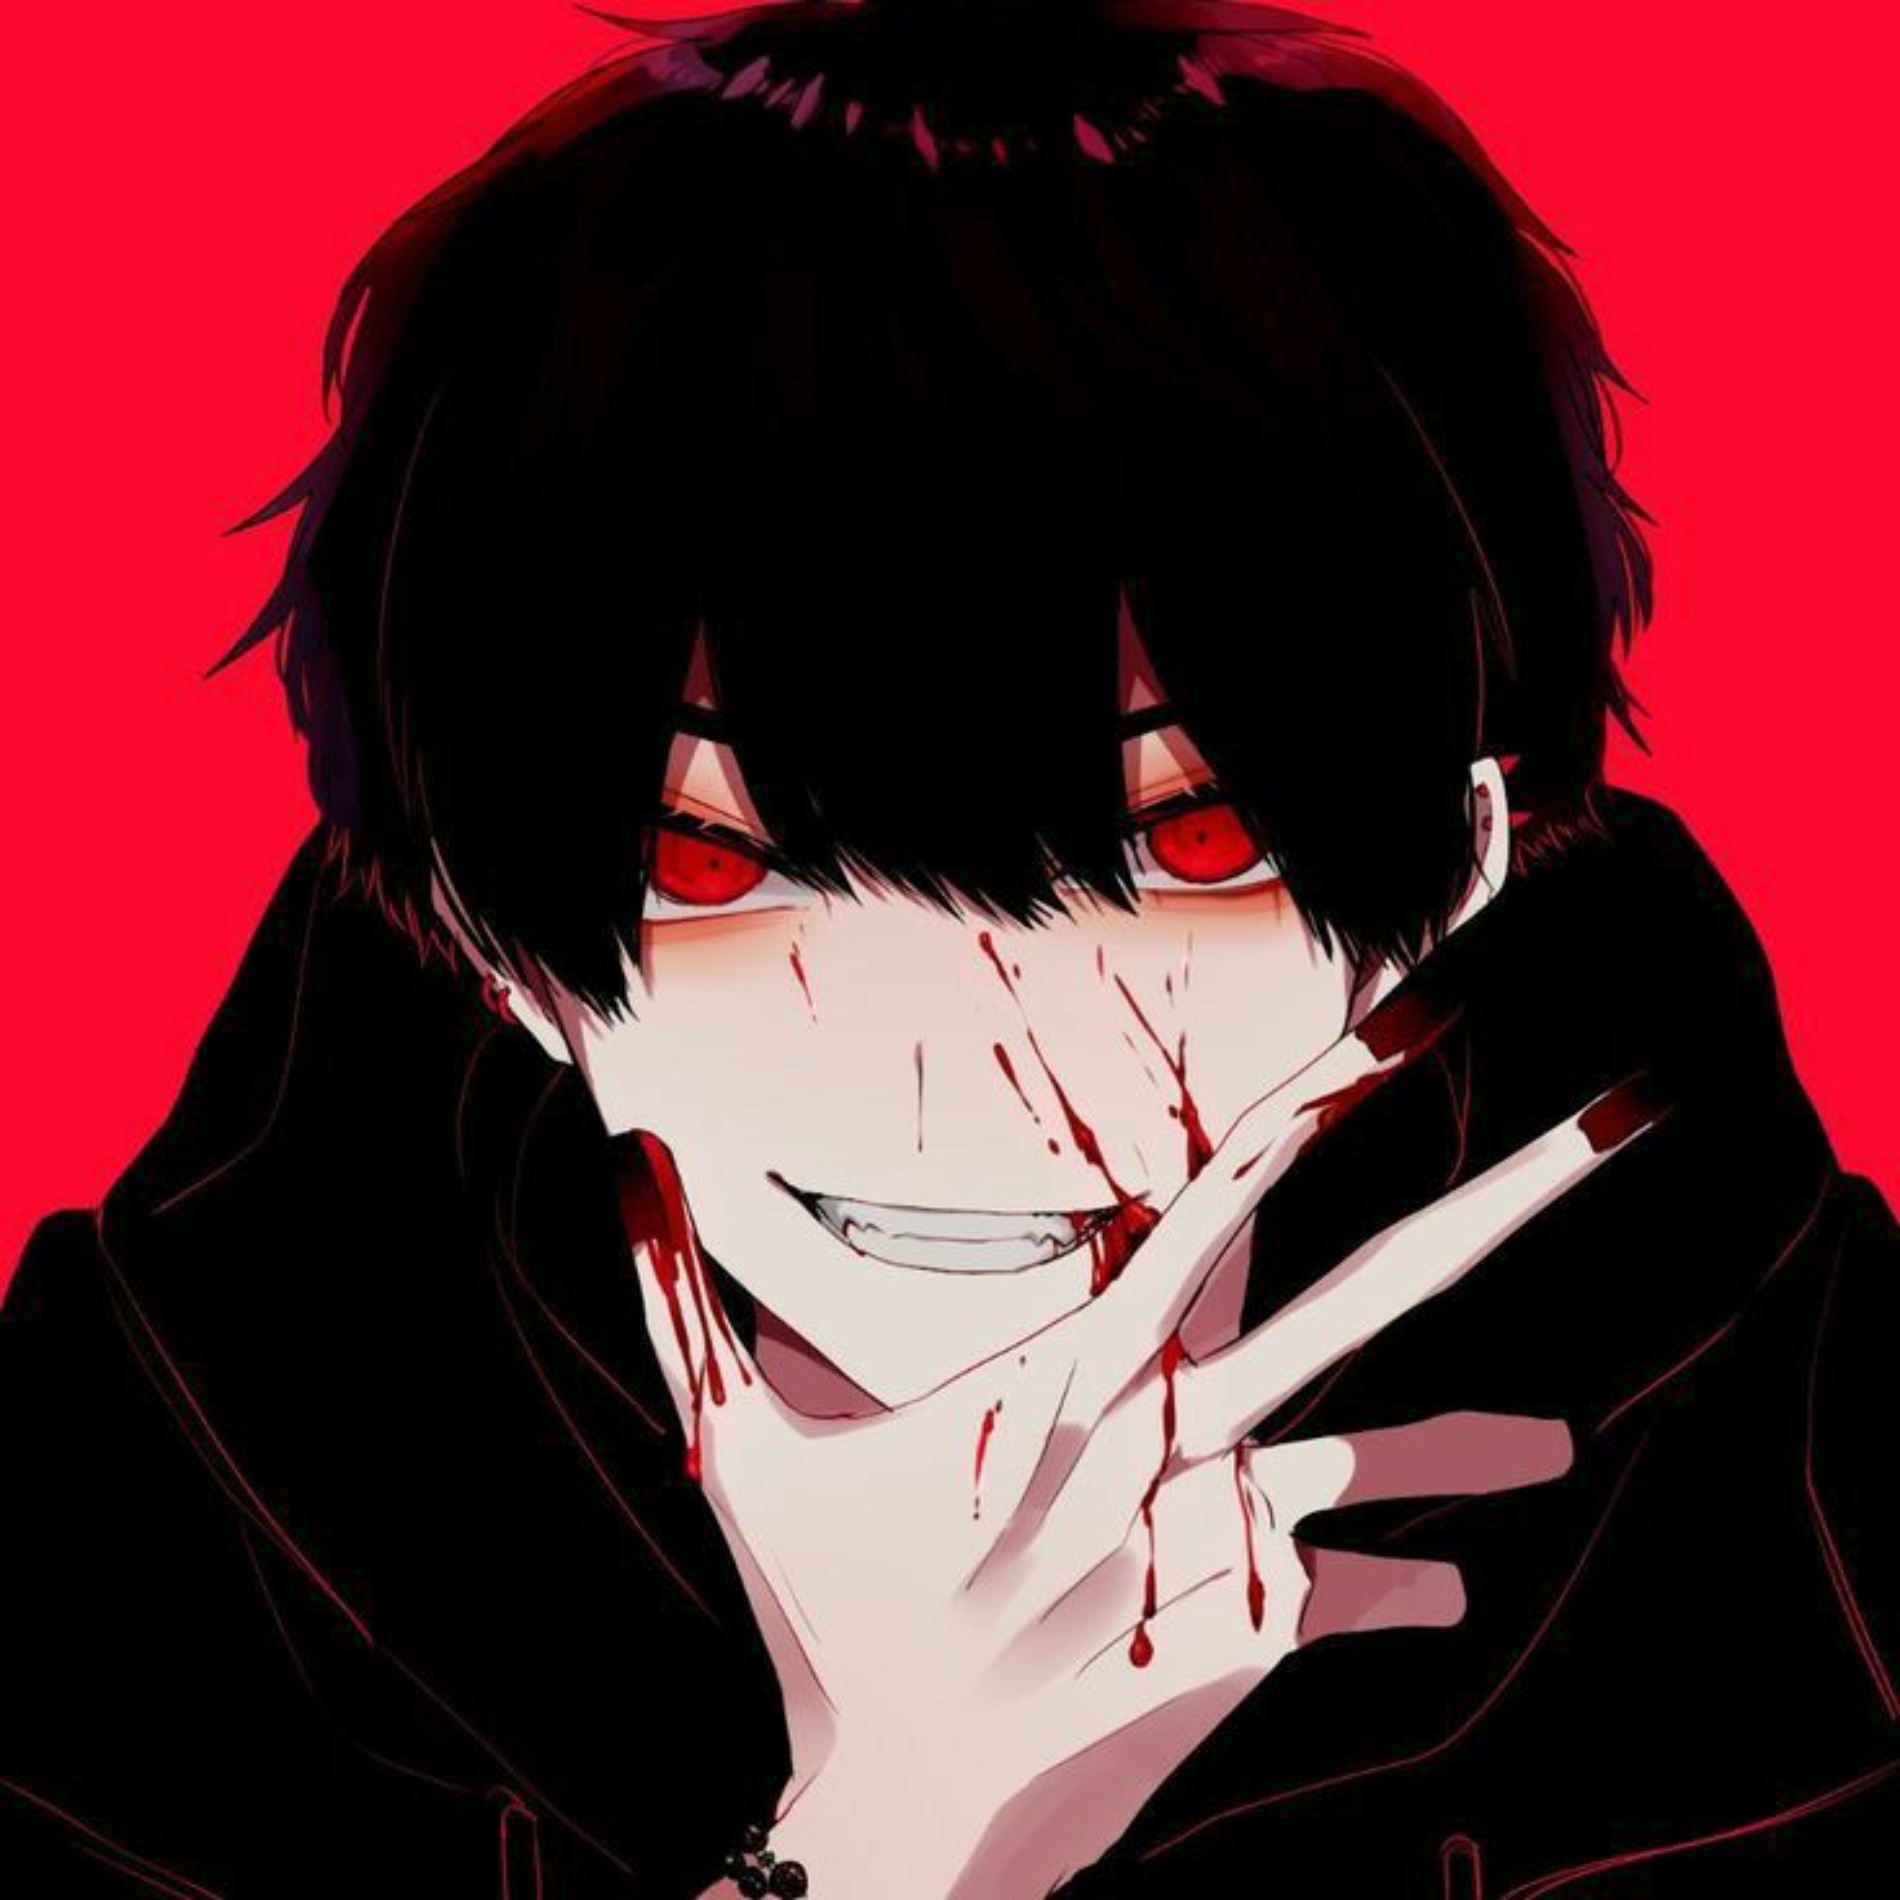 Evil Anime Boy Pfp for twitter